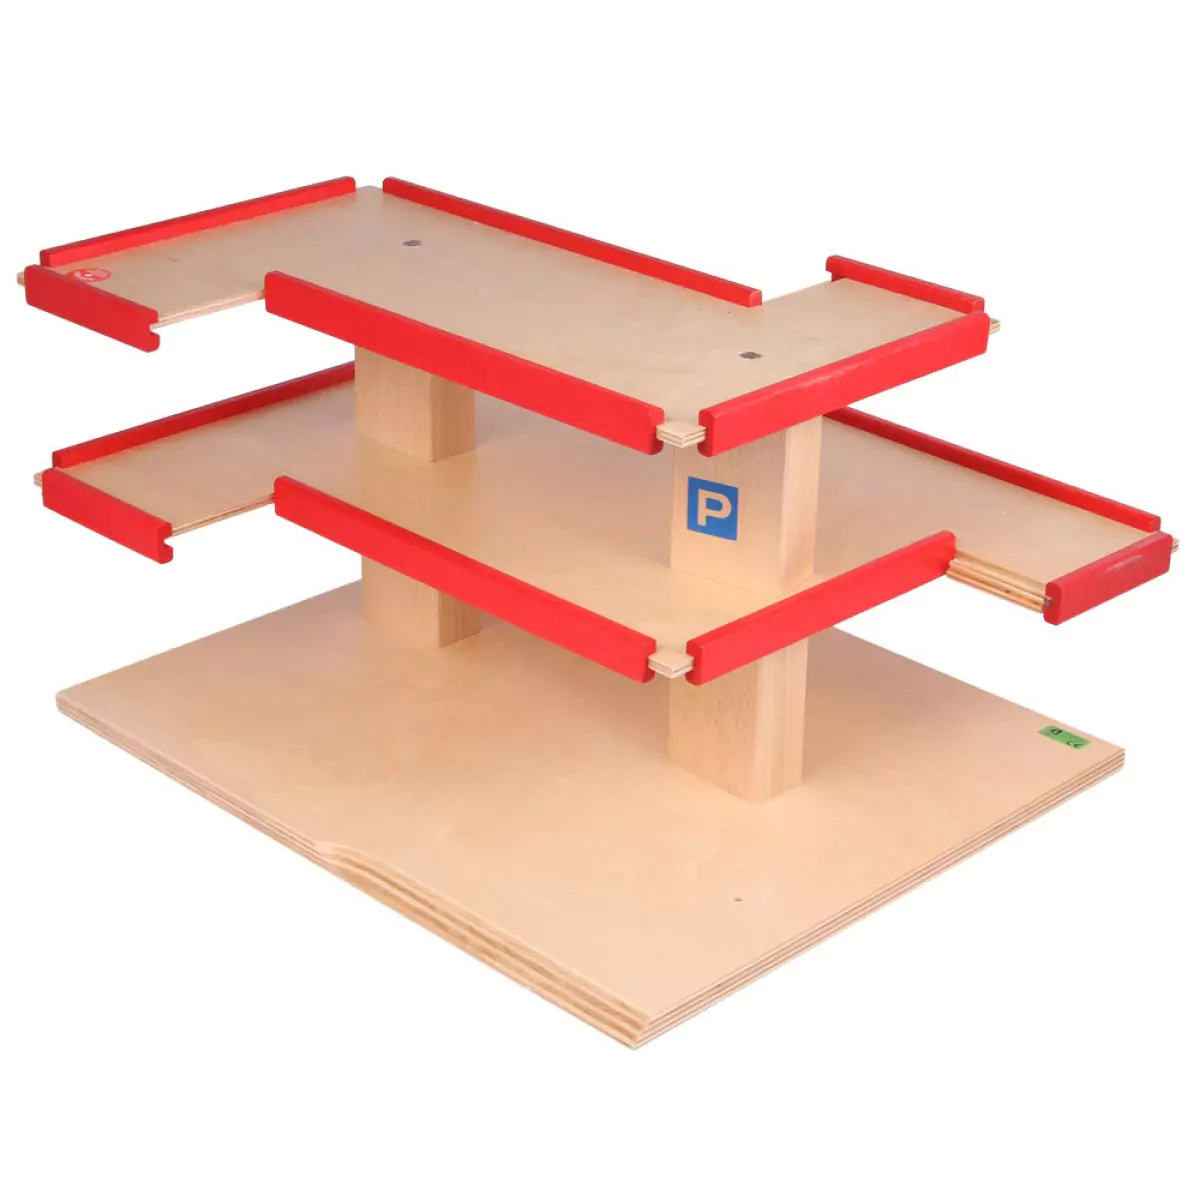 Rot BECK Parkhaus mit Aufzug ohne Fahrzeuge Spielzeug Holzspielzeug 30000 